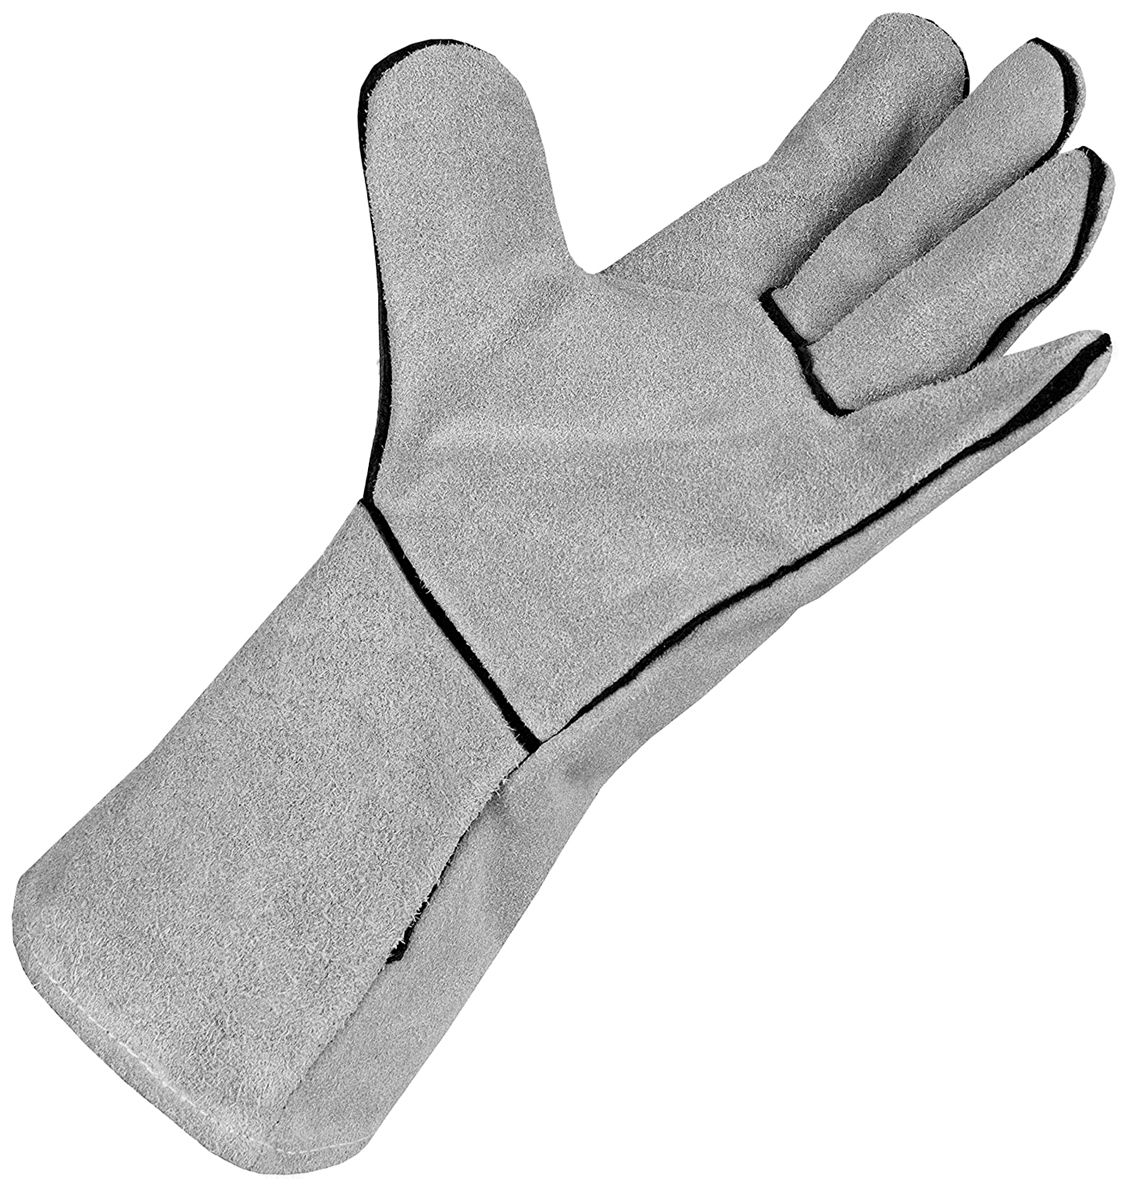 ACE SafeWeld Schweißerhandschuhe - Lange Leder-Handschuhe für Schweißer -  Handschutz - Arbeitsschutz - ACE Technik.com - ACE-Technik.com -  Arbeitsschutz u.v.m. im Onlinehshop